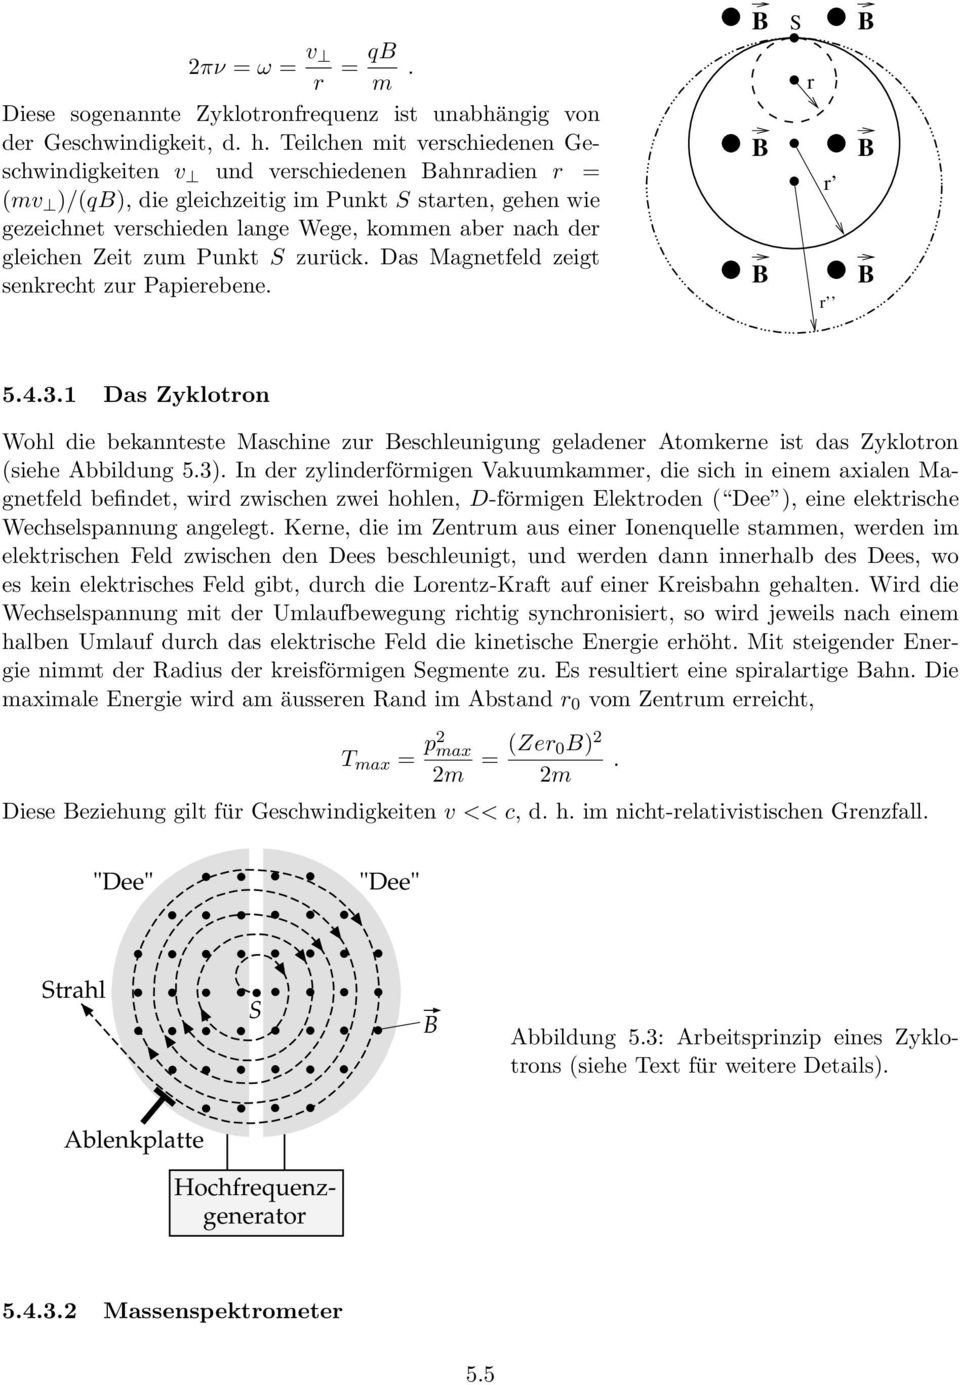 Zyklotron Wohl die bekannteste Maschine zur eschleunigung geladener Atomkerne ist das Zyklotron (siehe Abbildung 53) n der zylinderförmigen Vakuumkammer, die sich in einem axialen Magnetfeld